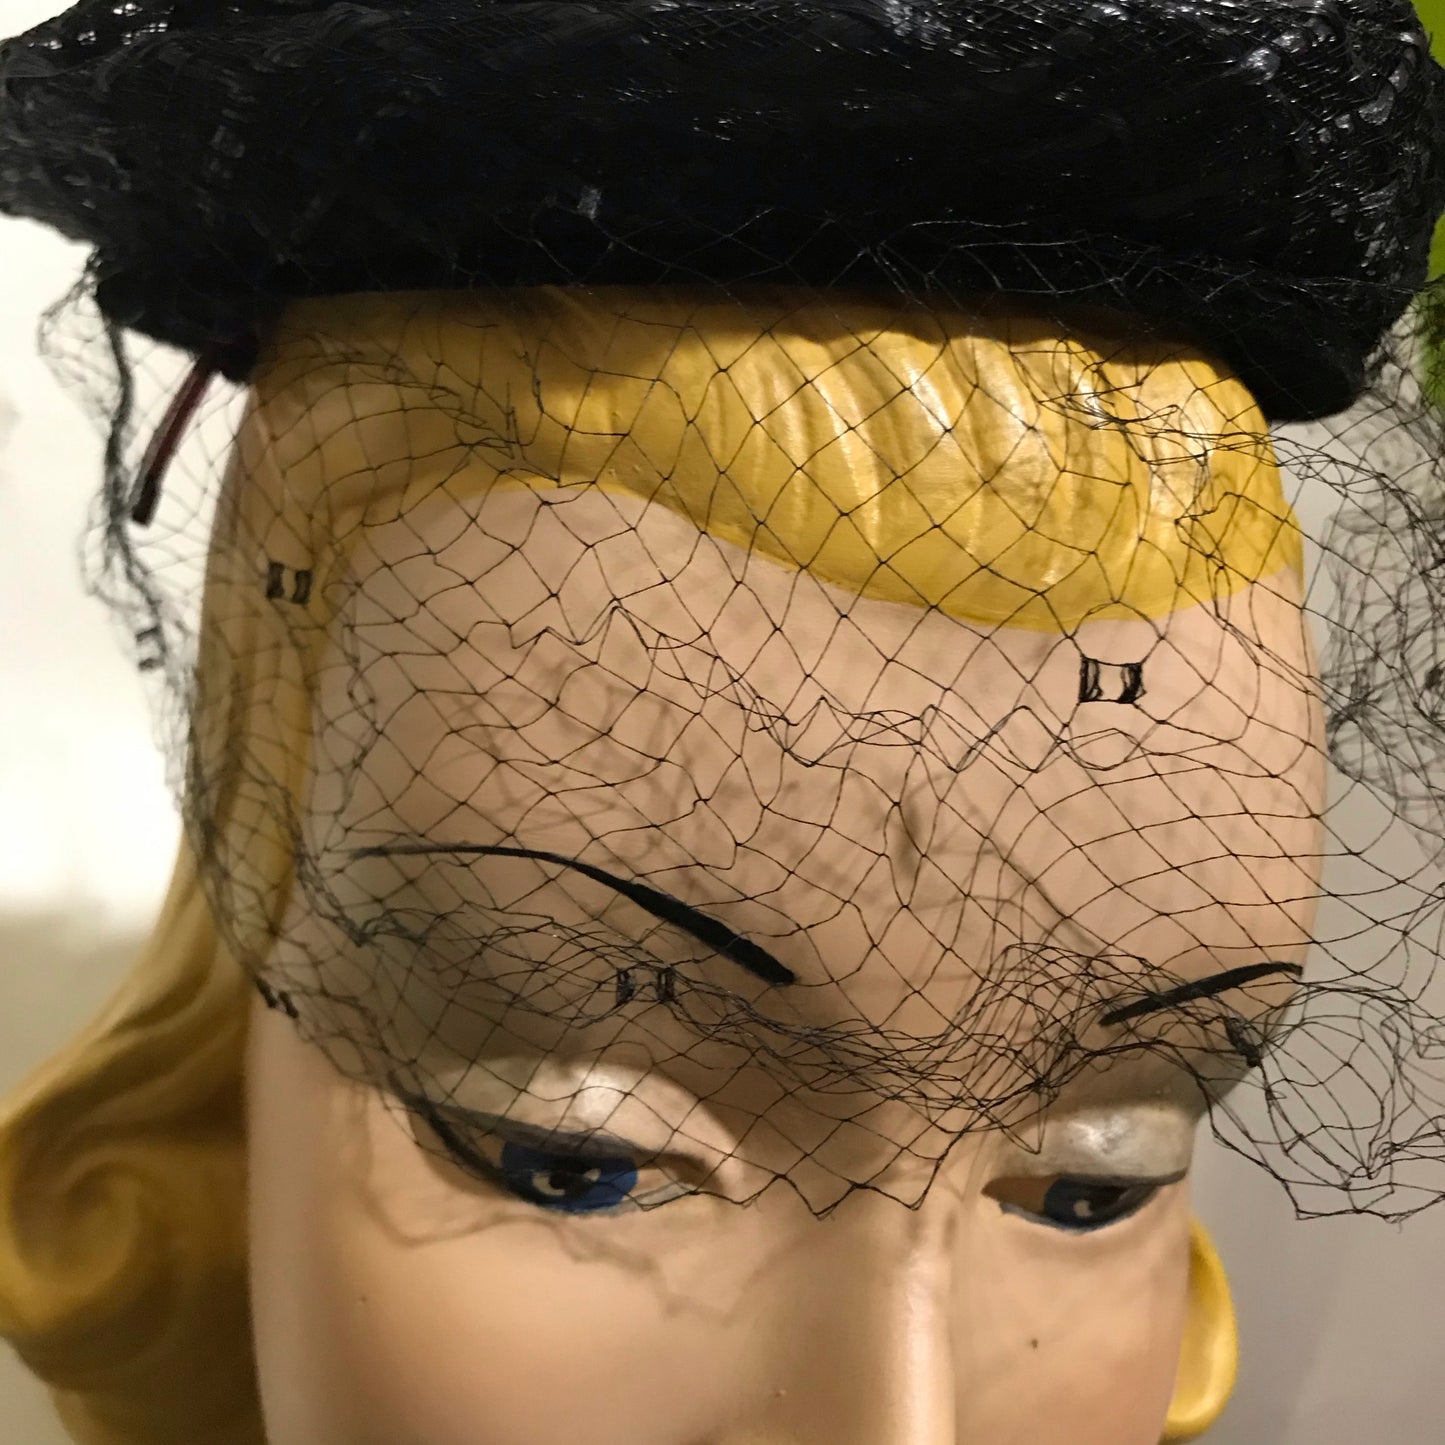 Swirled Black Horsehair Braid Veiled Hat circa 1960s